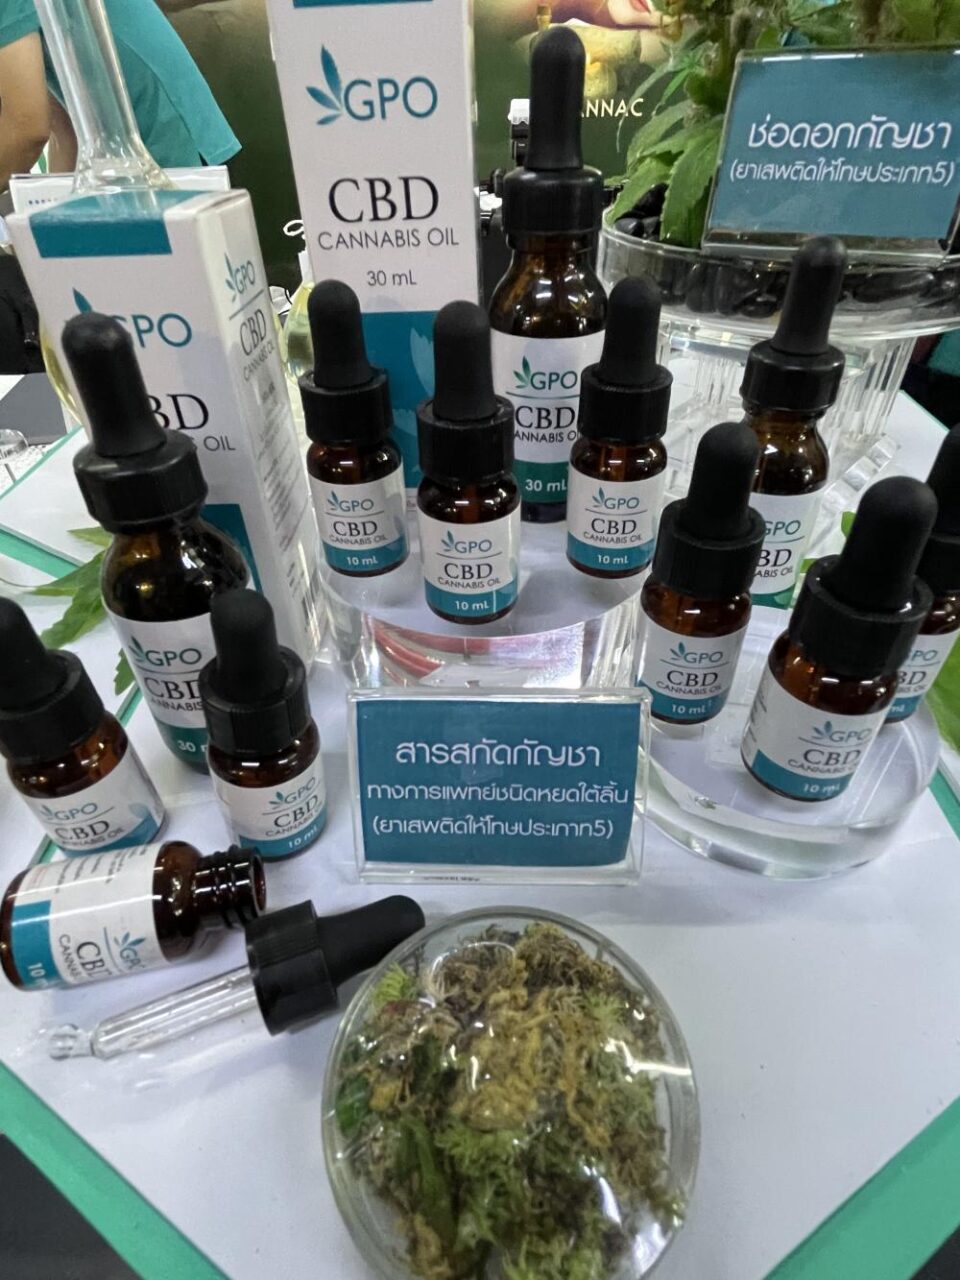 CBD-Öl aus Cannabis wird auf einer Ganja- und Hanf-Expo ausgestellt.